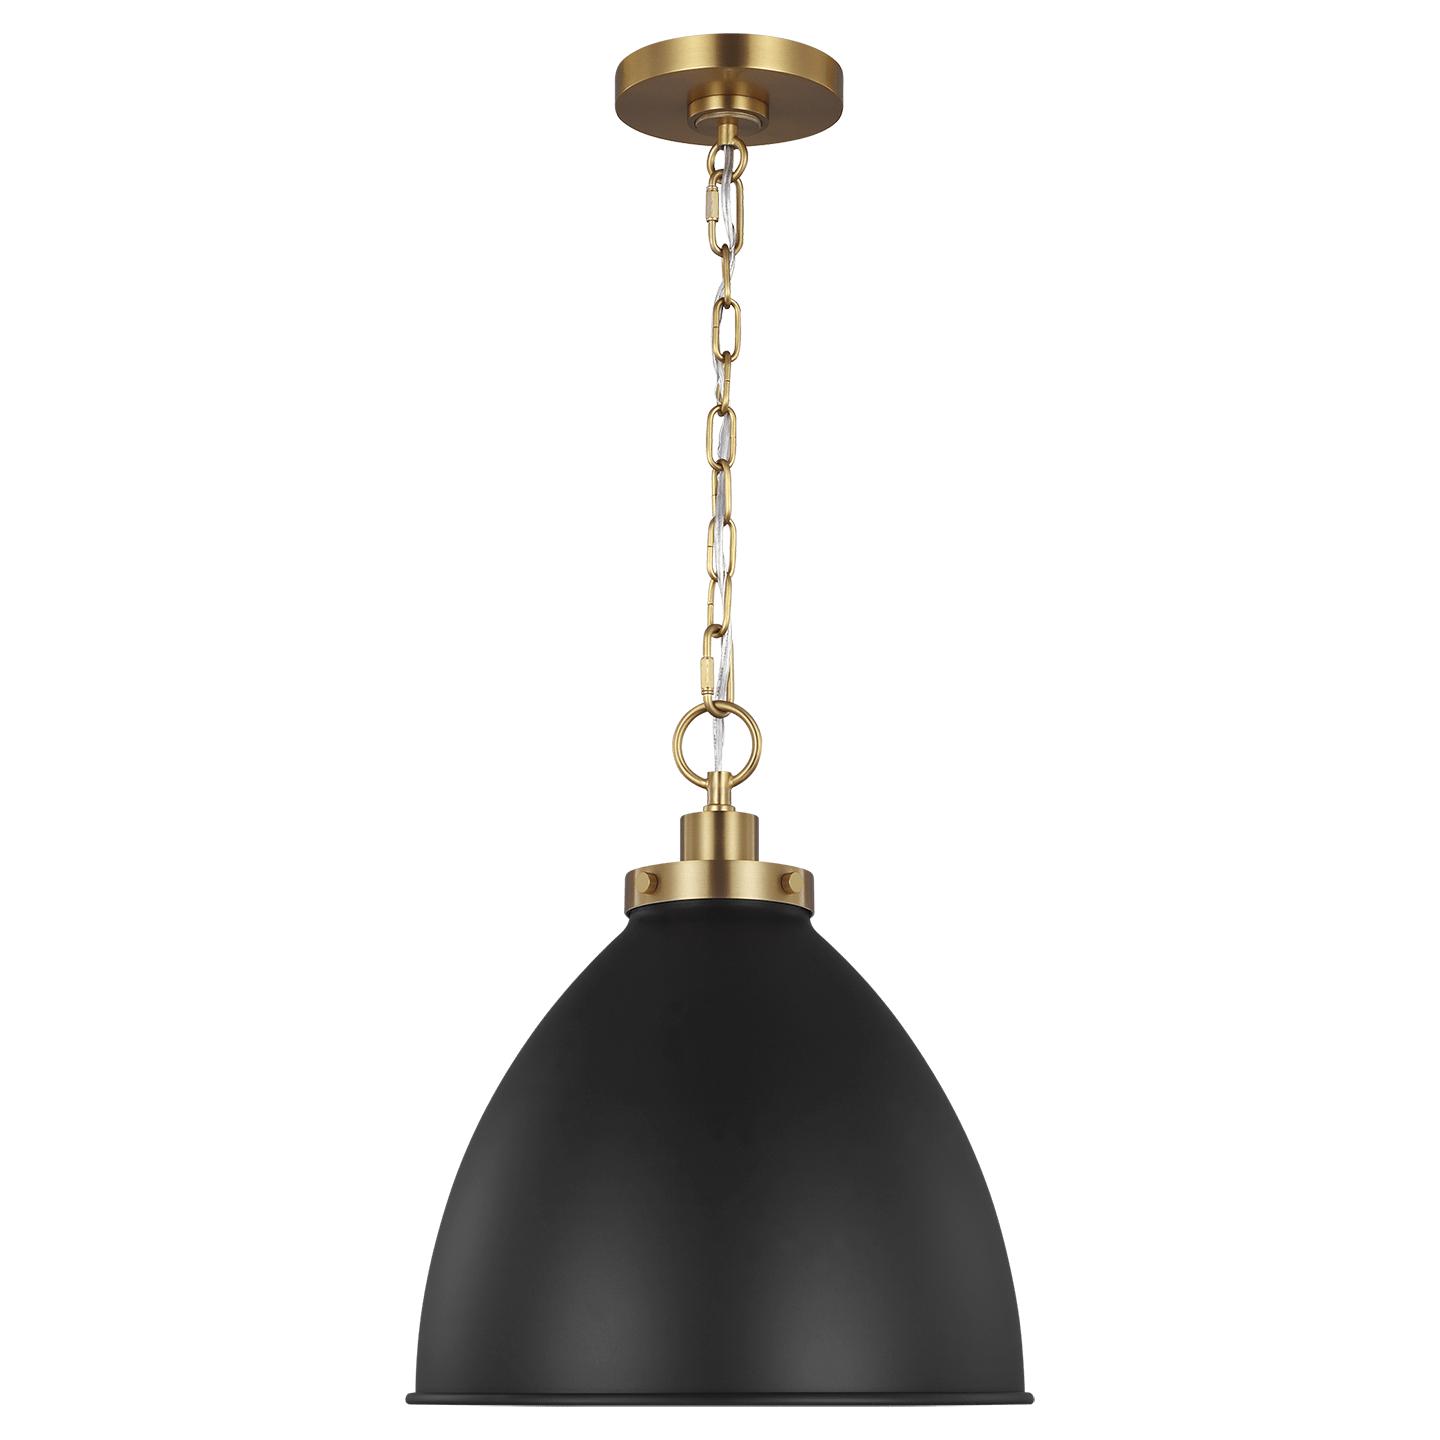 Купить Подвесной светильник Wellfleet Medium Dome Pendant в интернет-магазине roooms.ru